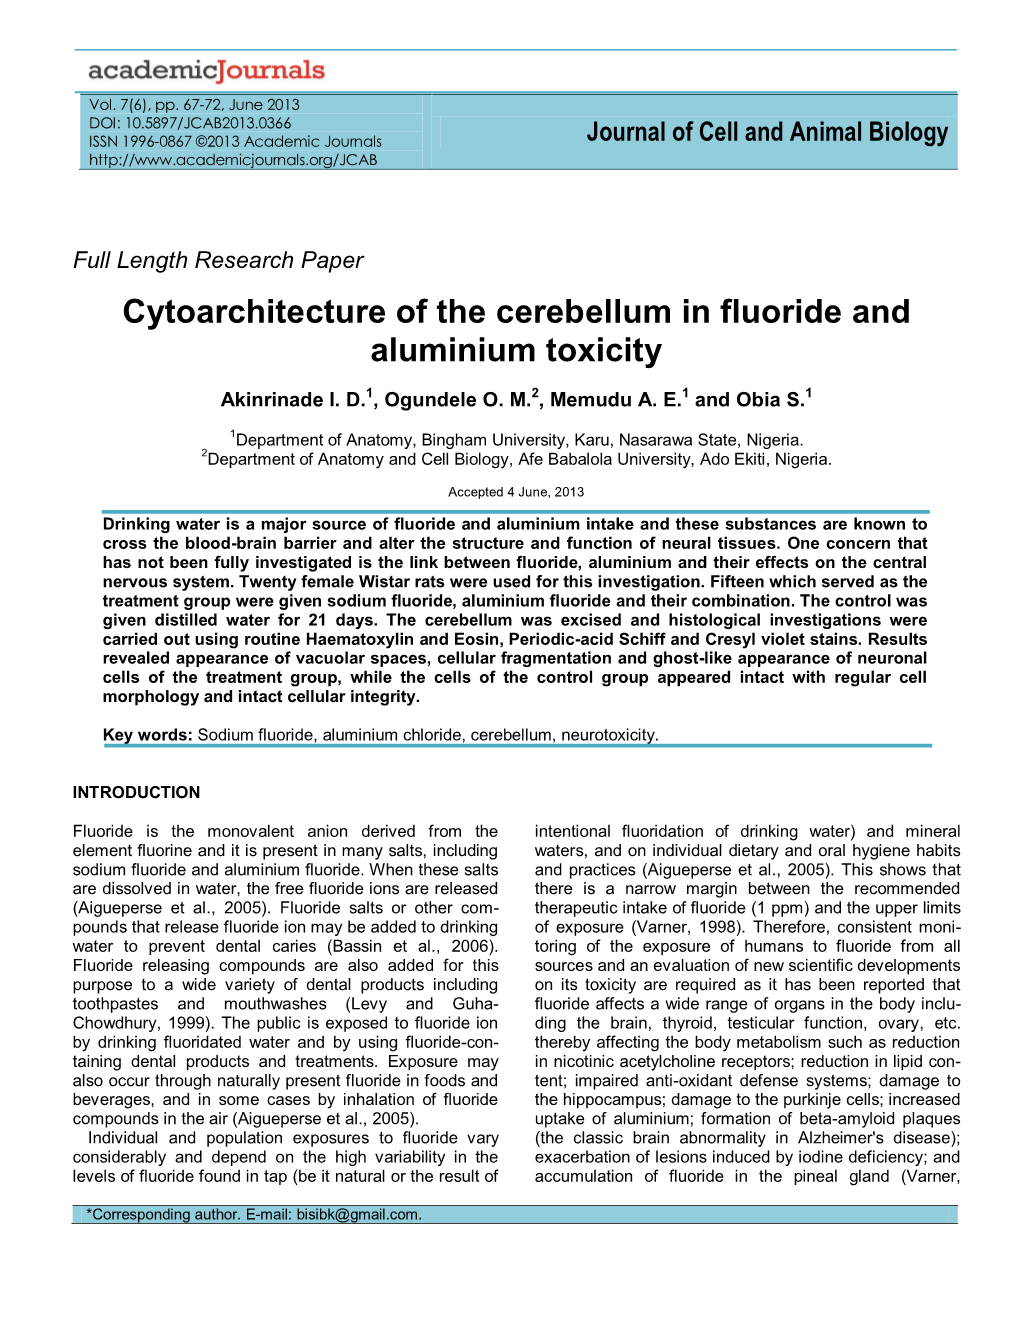 Cytoarchitecture of the Cerebellum in Fluoride and Aluminium Toxicity